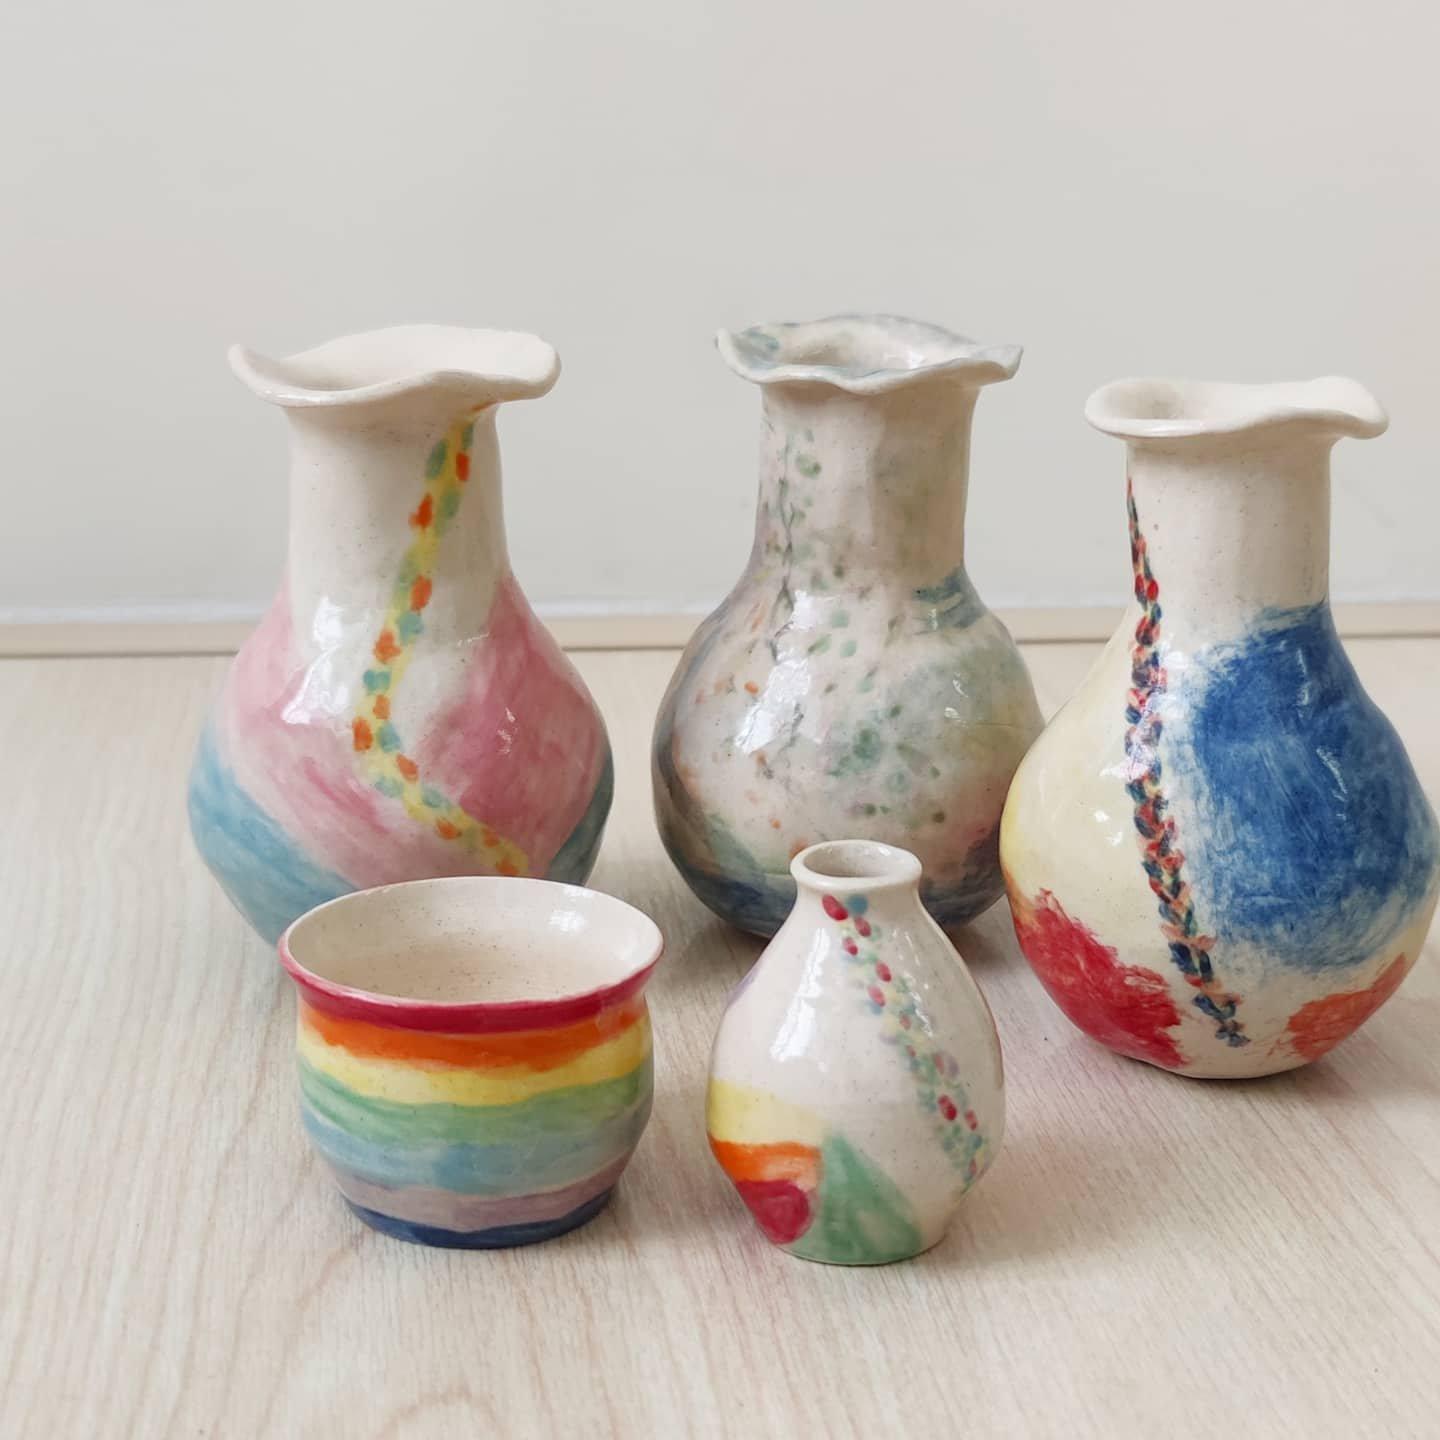 思陶藝術工作室 【手捏陶瓷工作坊】— 手捏陶瓷花瓶 / 清酒樽 5